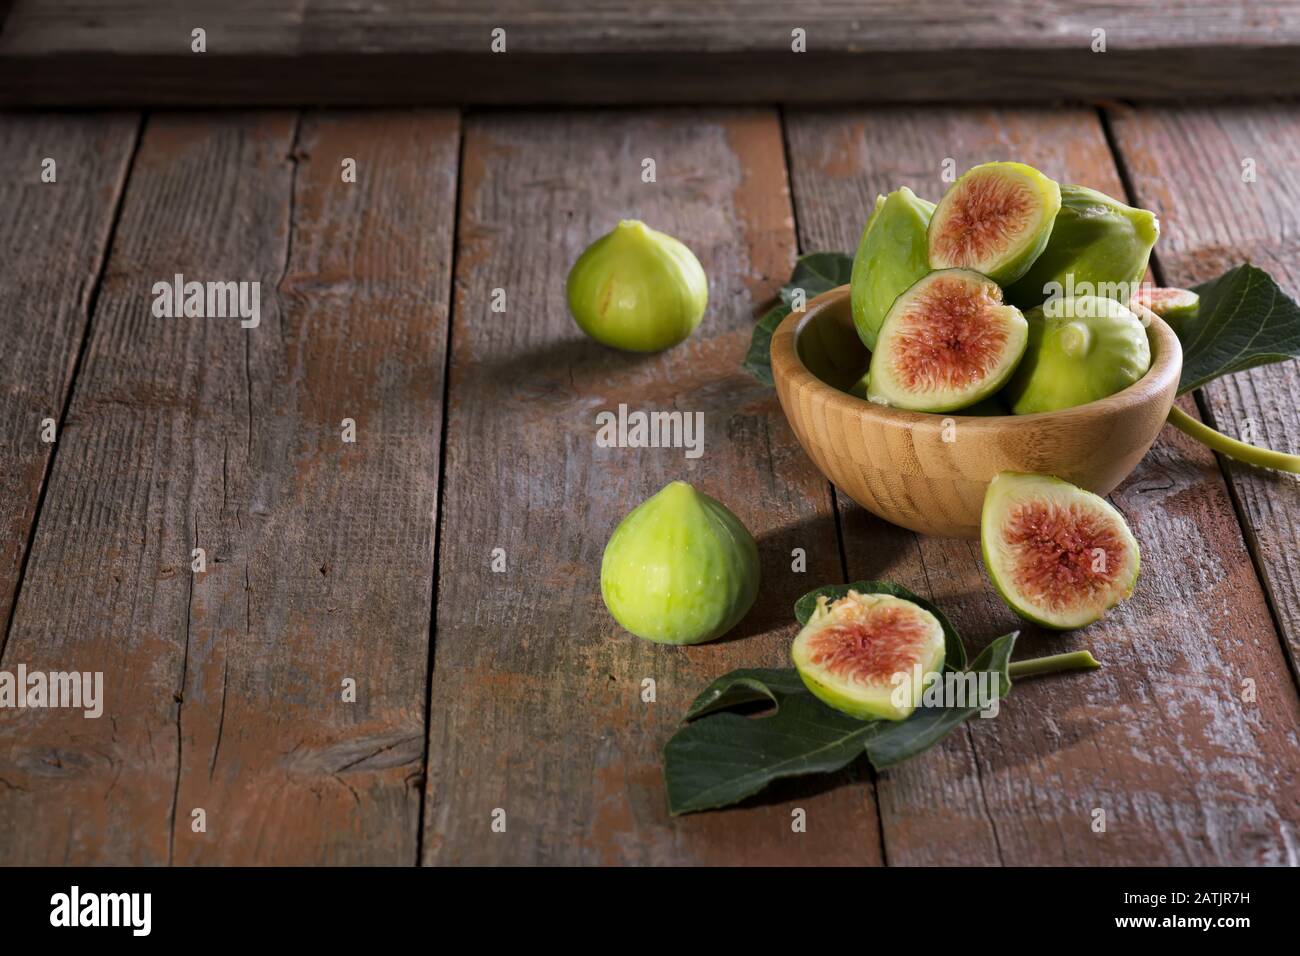 Figues vertes mûres avec feuilles vertes. Fruit de figue méditerranéenne sain sur un chien de fond en bois, fabriqué dans les Pouilles, en Italie Banque D'Images